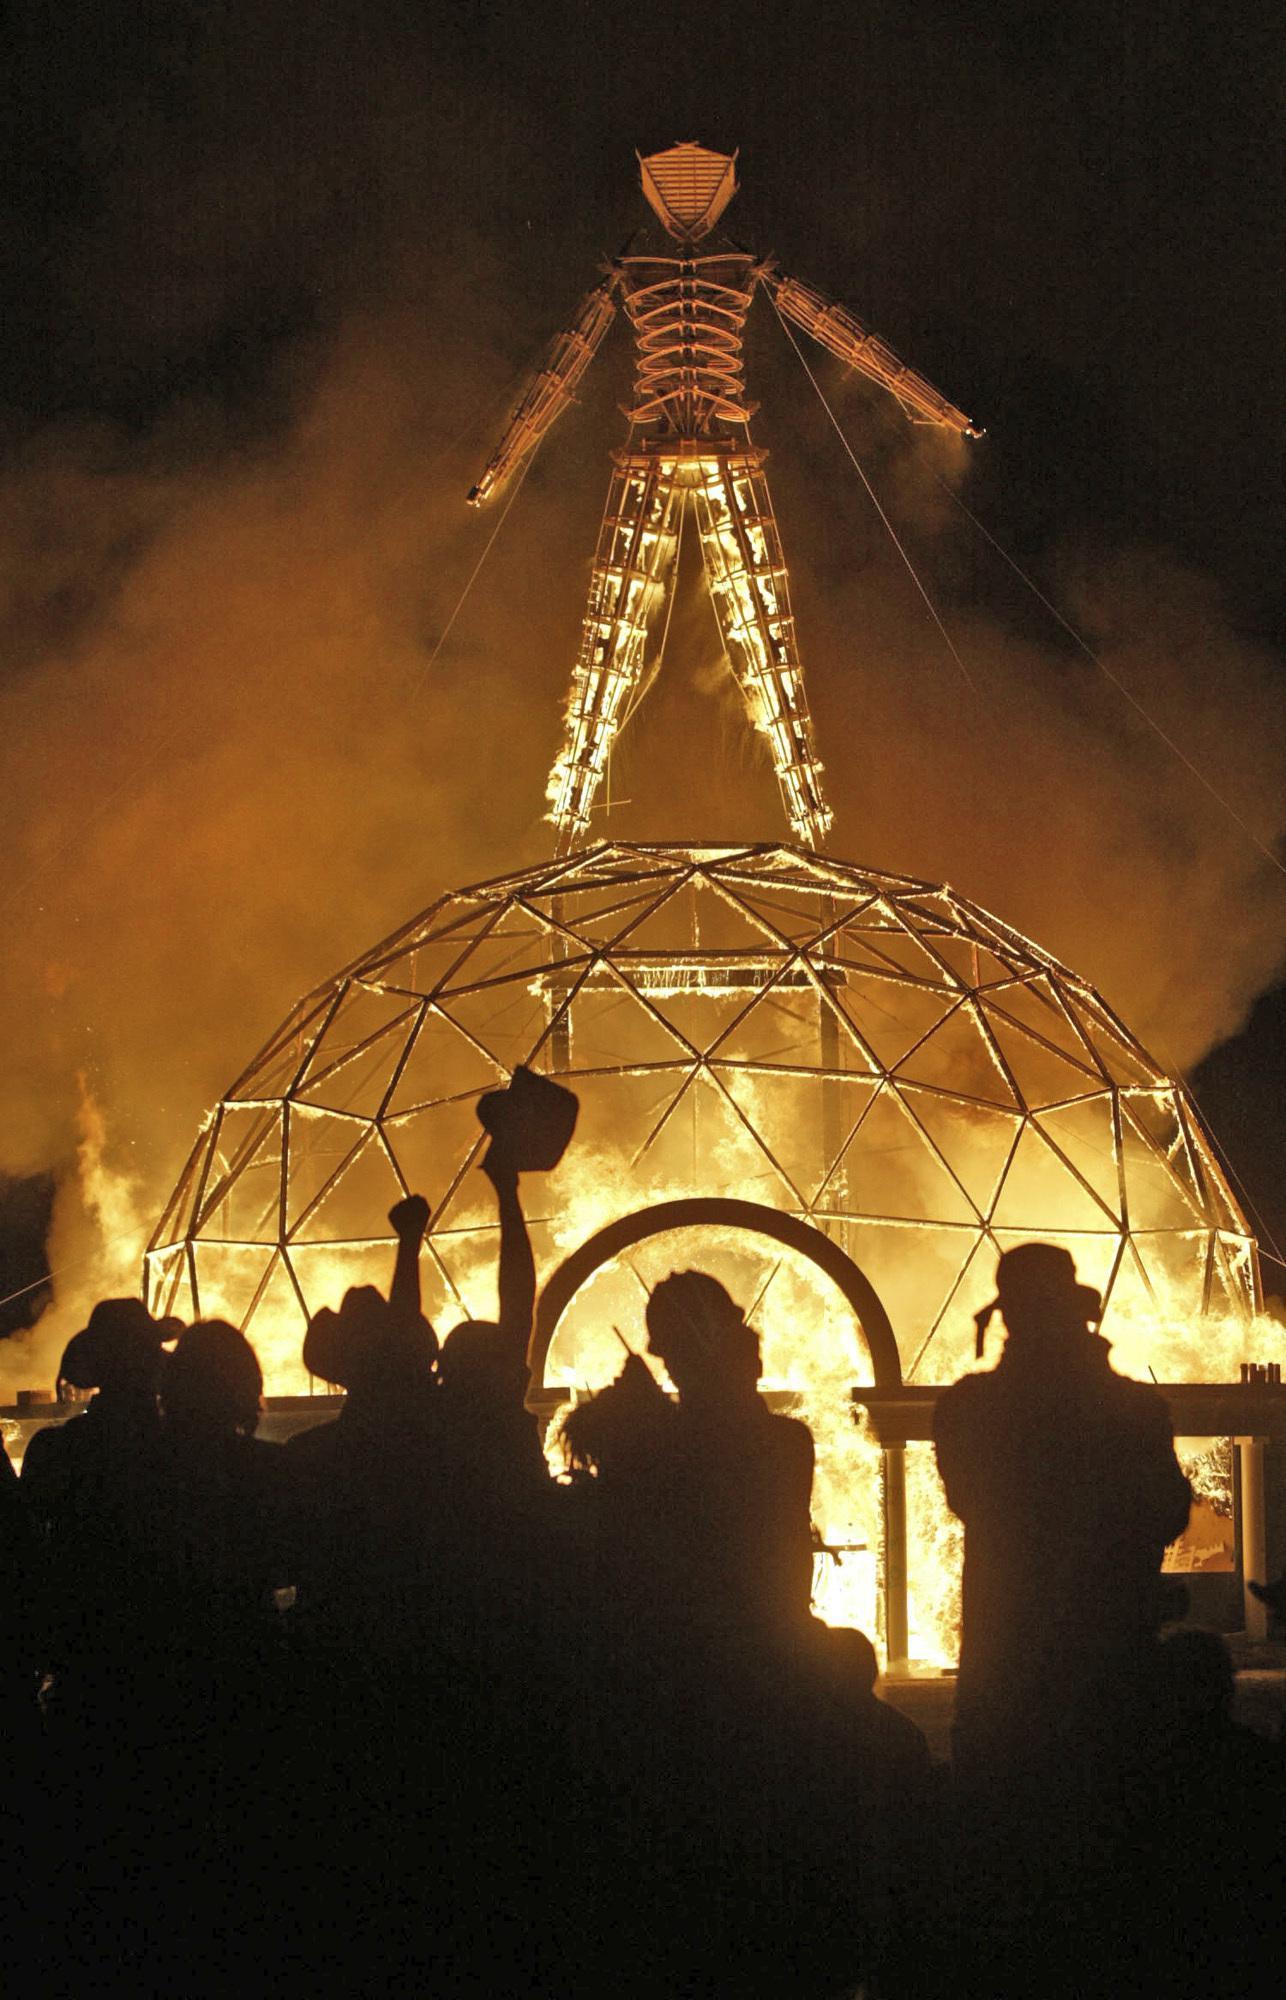 Nevada’da düzenlenen Burning Man müzik festivali bu yıl da ertelendi